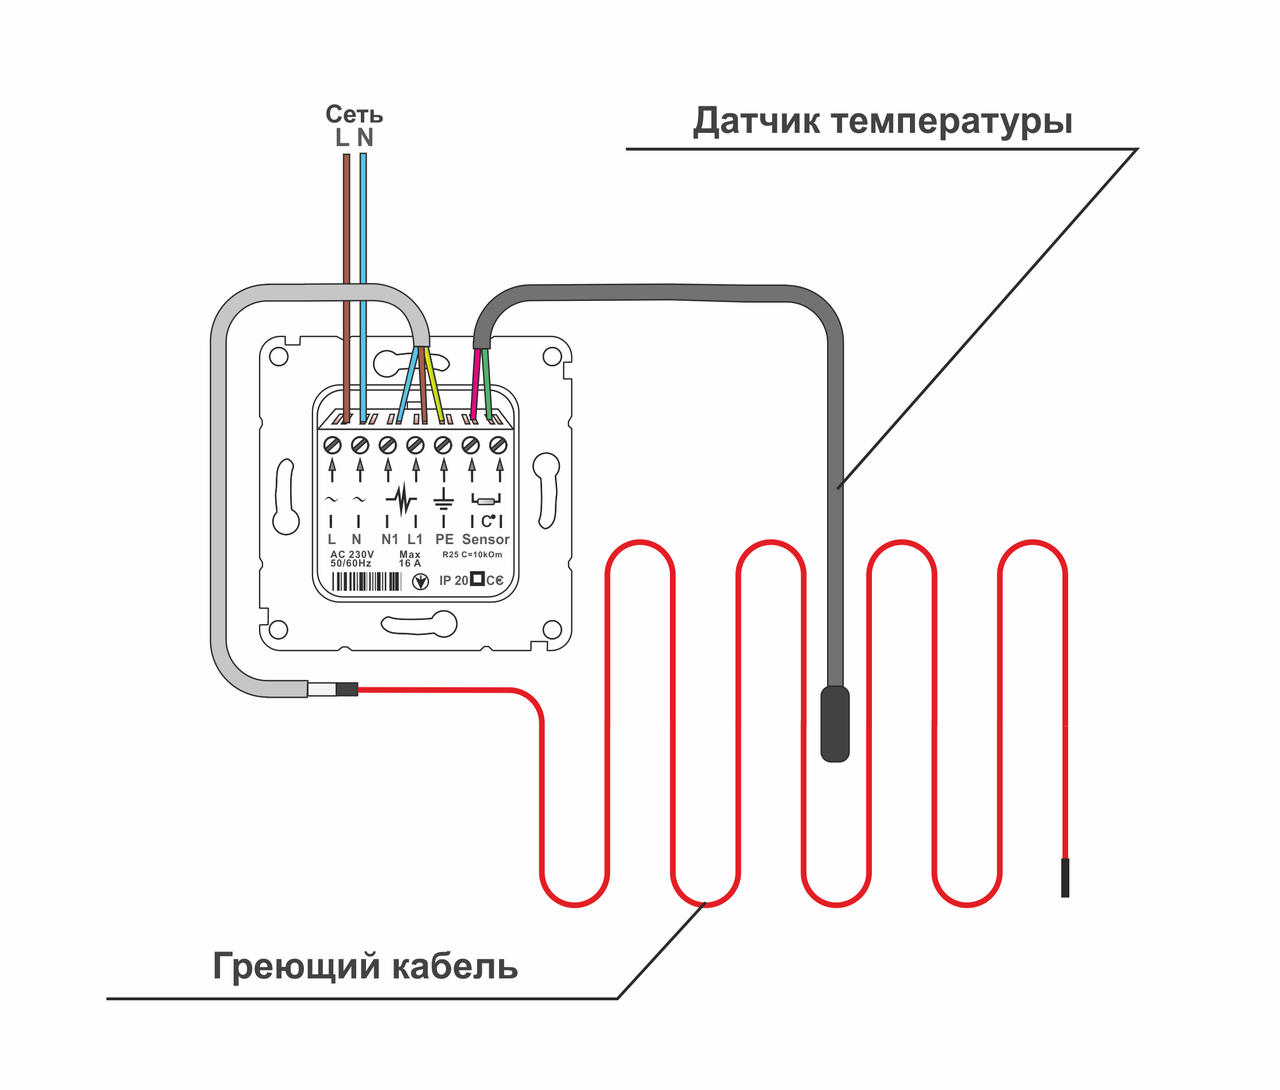 Датчики температуры на батареи отопления в помещениях, рекомендации по установке своими руками